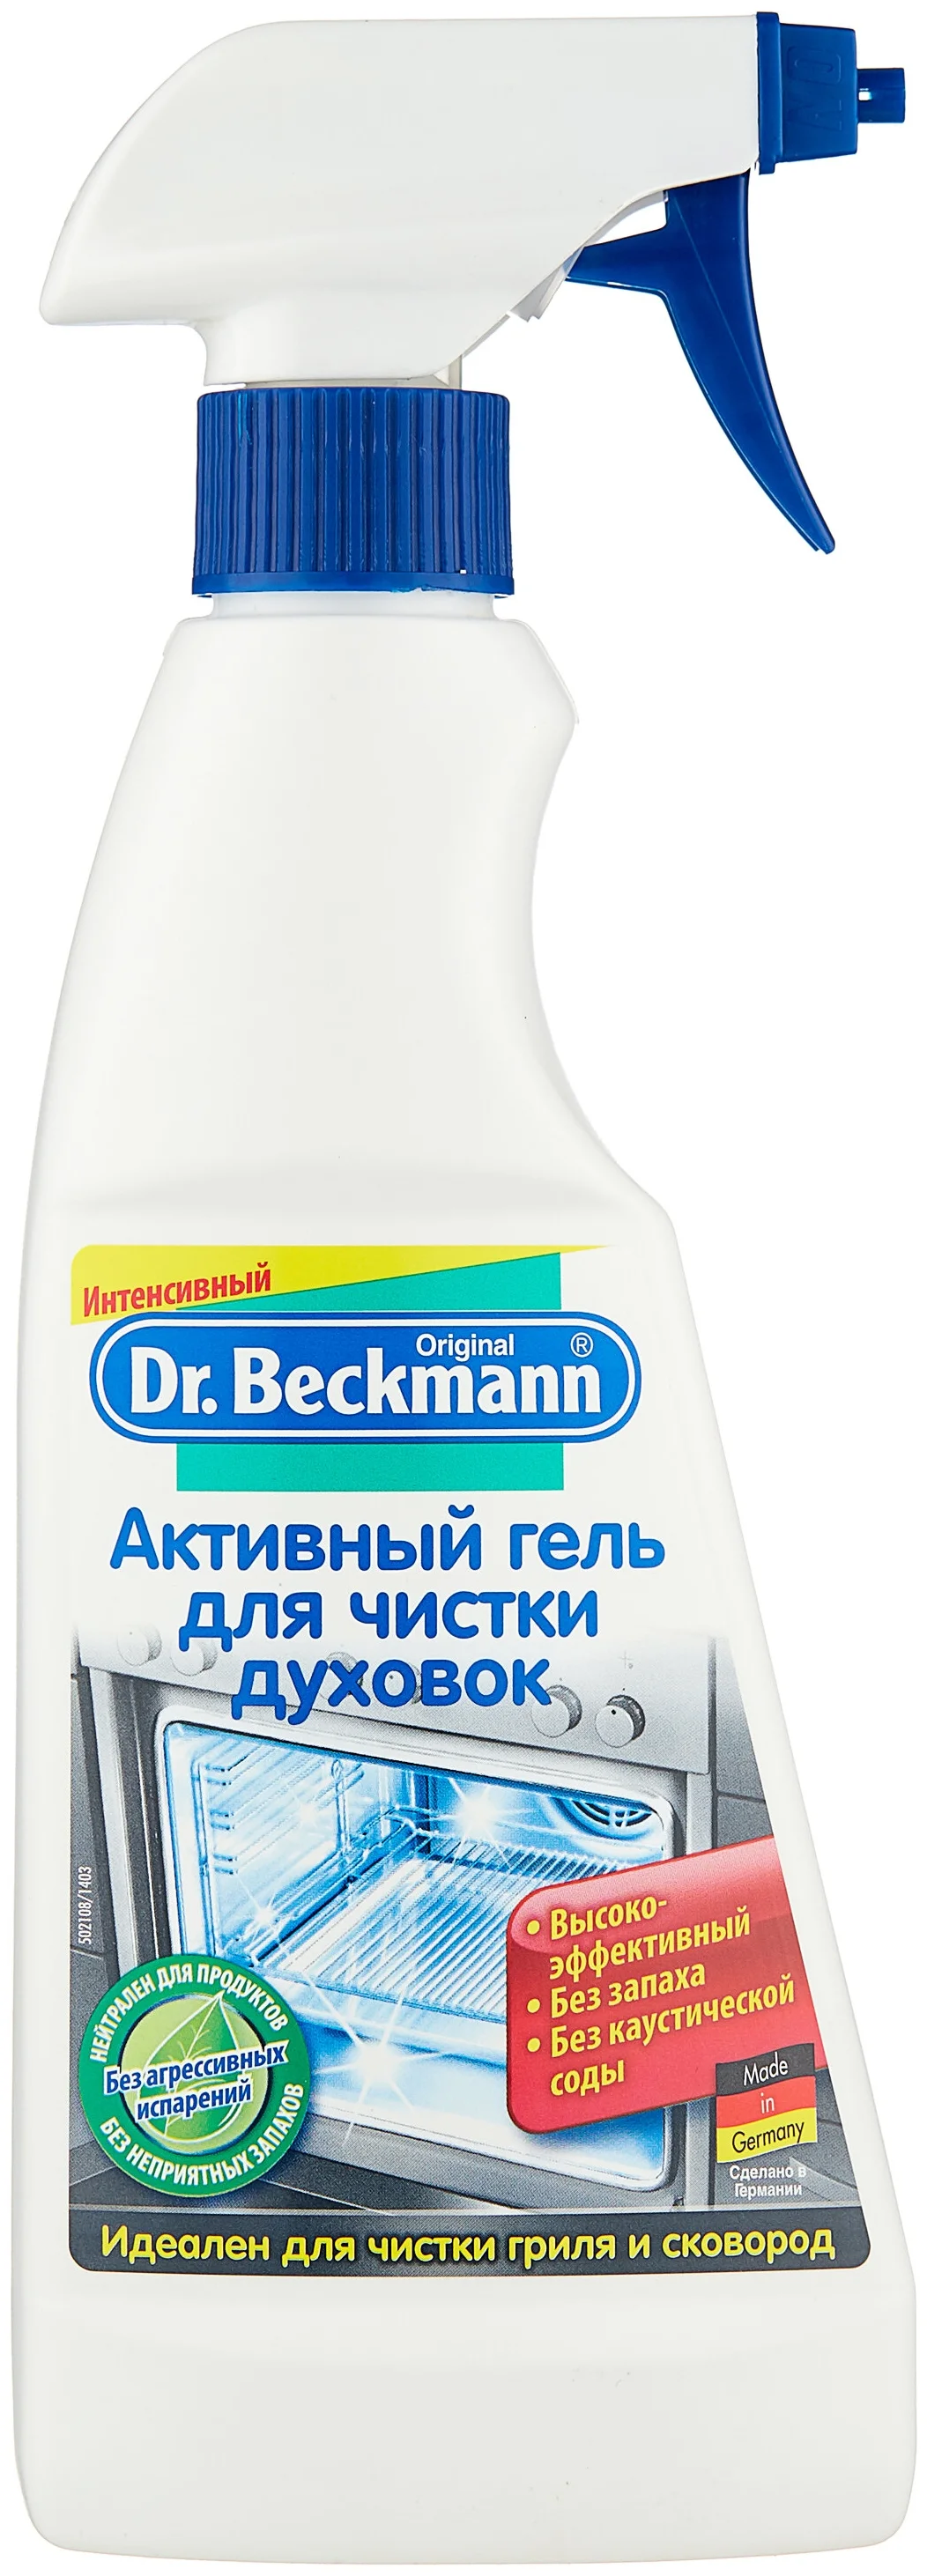 Активный гель для чистки духовок Dr. Beckmann - назначение: для металлических поверхностей, для стеклокерамики, для эмалированных поверхностей, для СВЧ, для кухонных плит, для духовых шкафов, для грилей, для удаления застарелого гриля